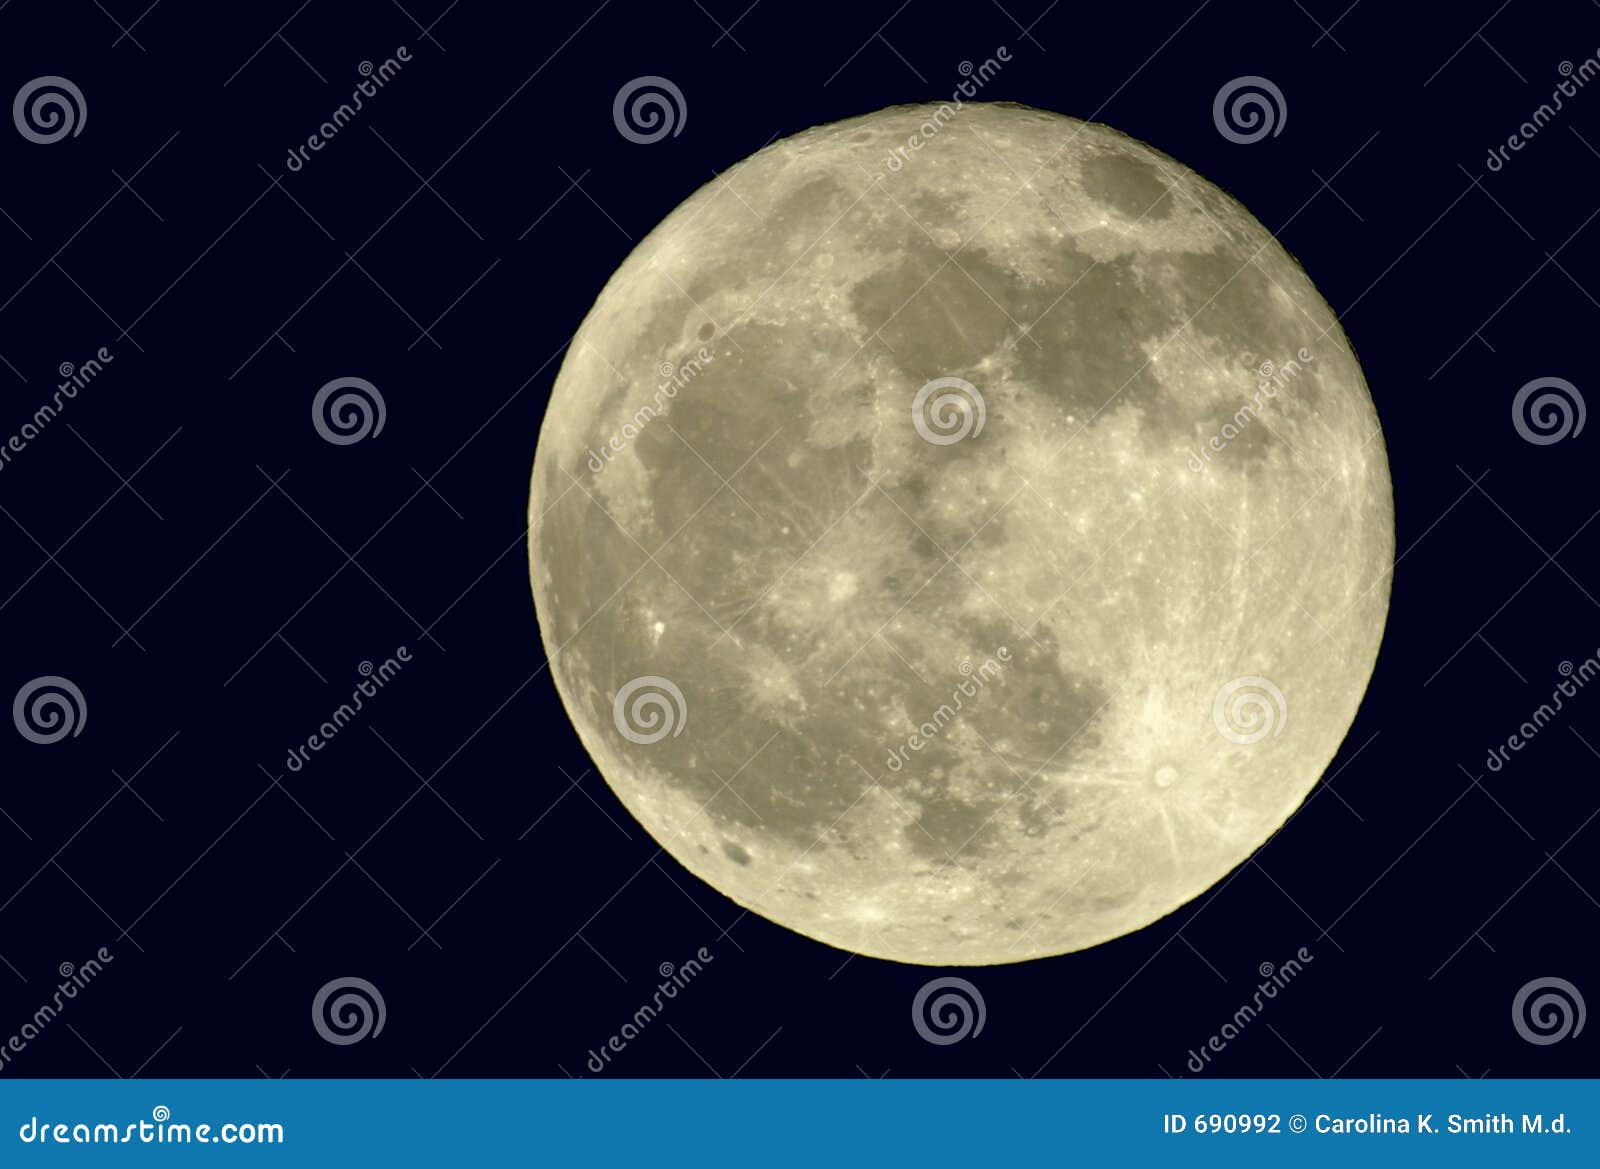 2400mm true full moon